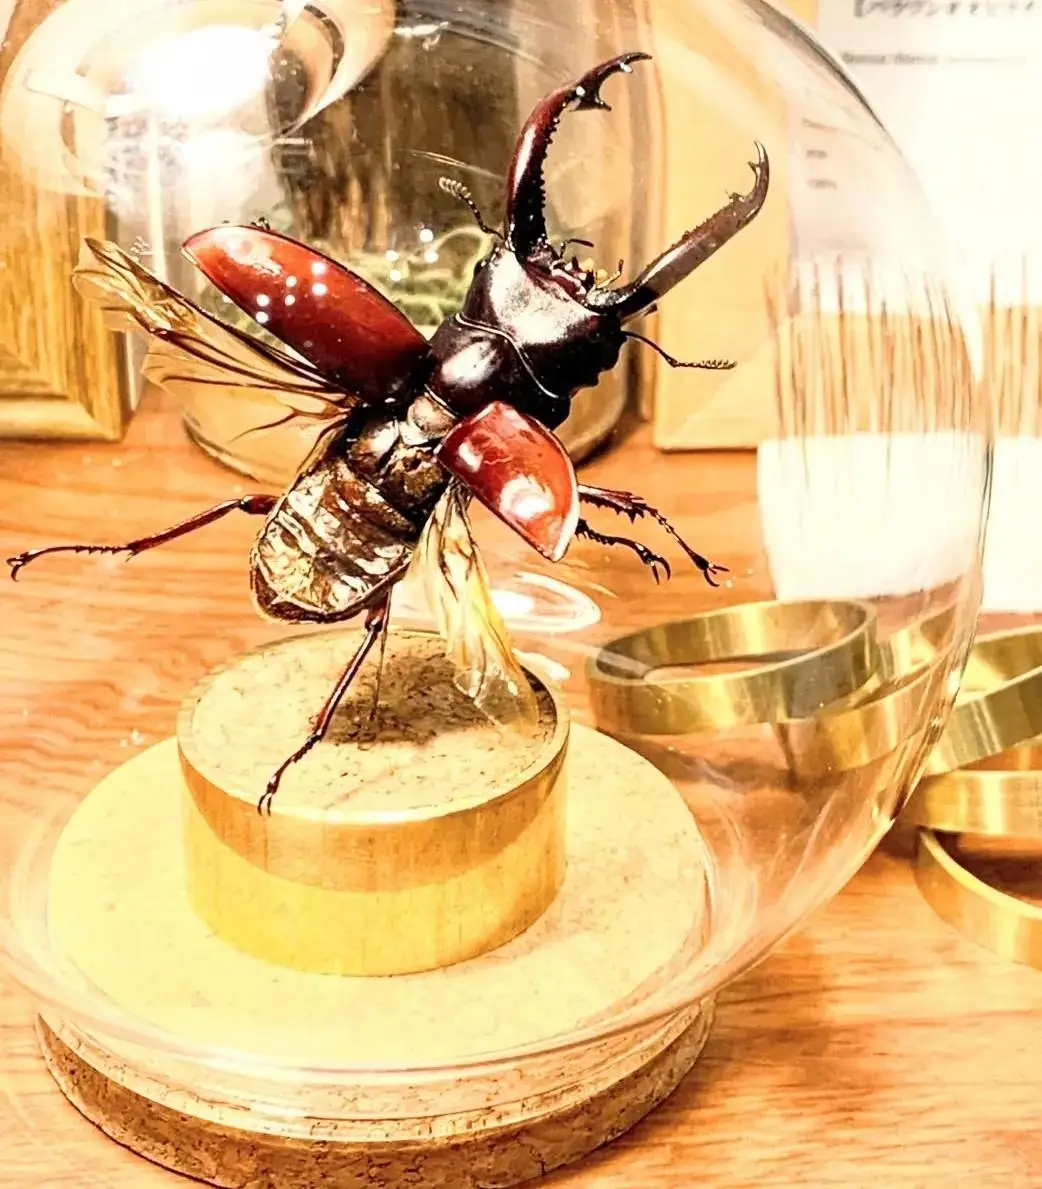 日本の昆虫標本ブランド『苔丸』の作品です。 | 昆虫標本専門店 苔丸